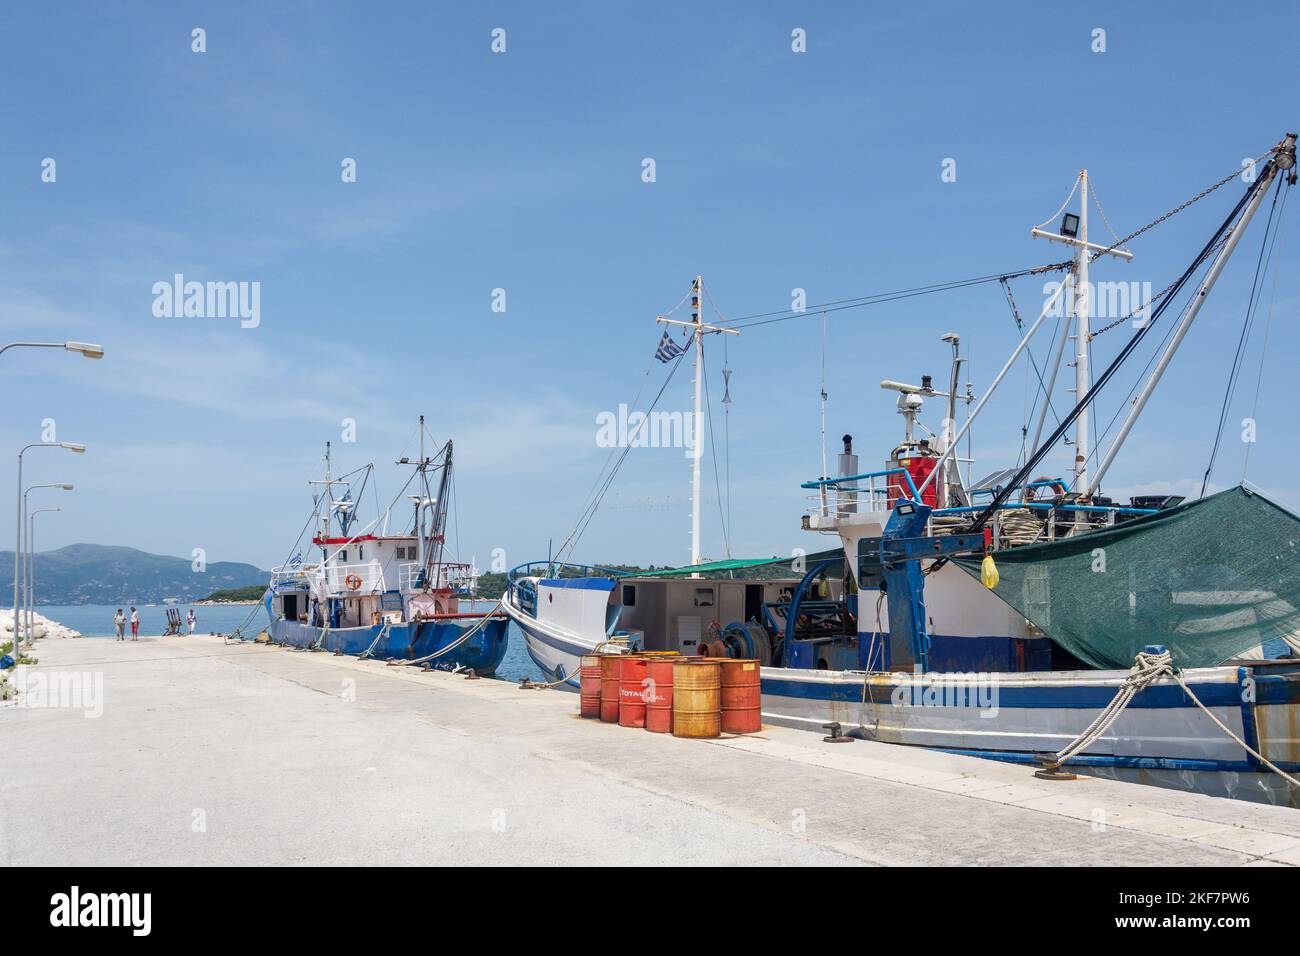 Fishing boats in harbour, Corfu Old Town, Corfu (Kerkyra), Ionian Islands, Greece Stock Photo